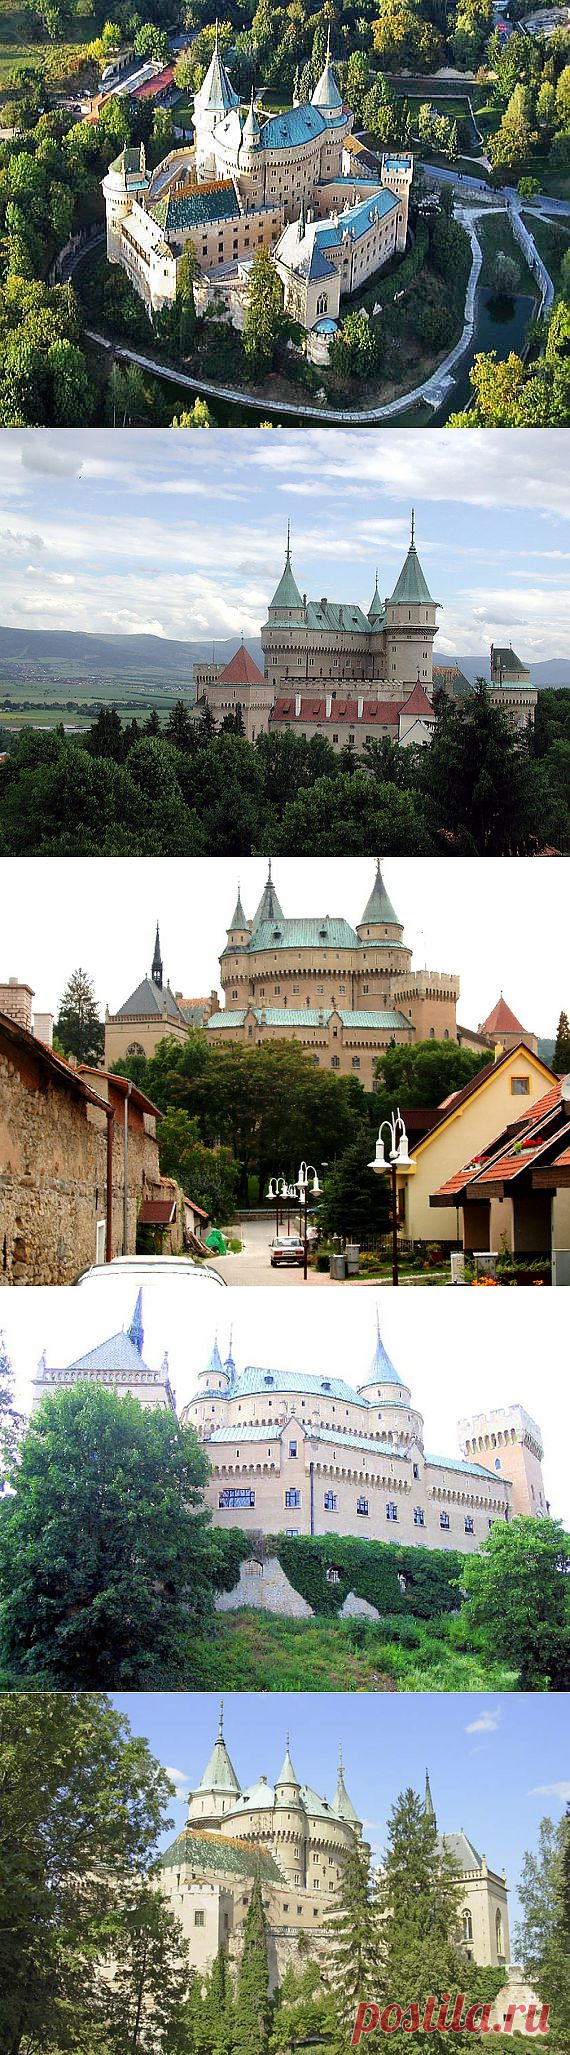 Посещение Бойницкого замка, Словакия.